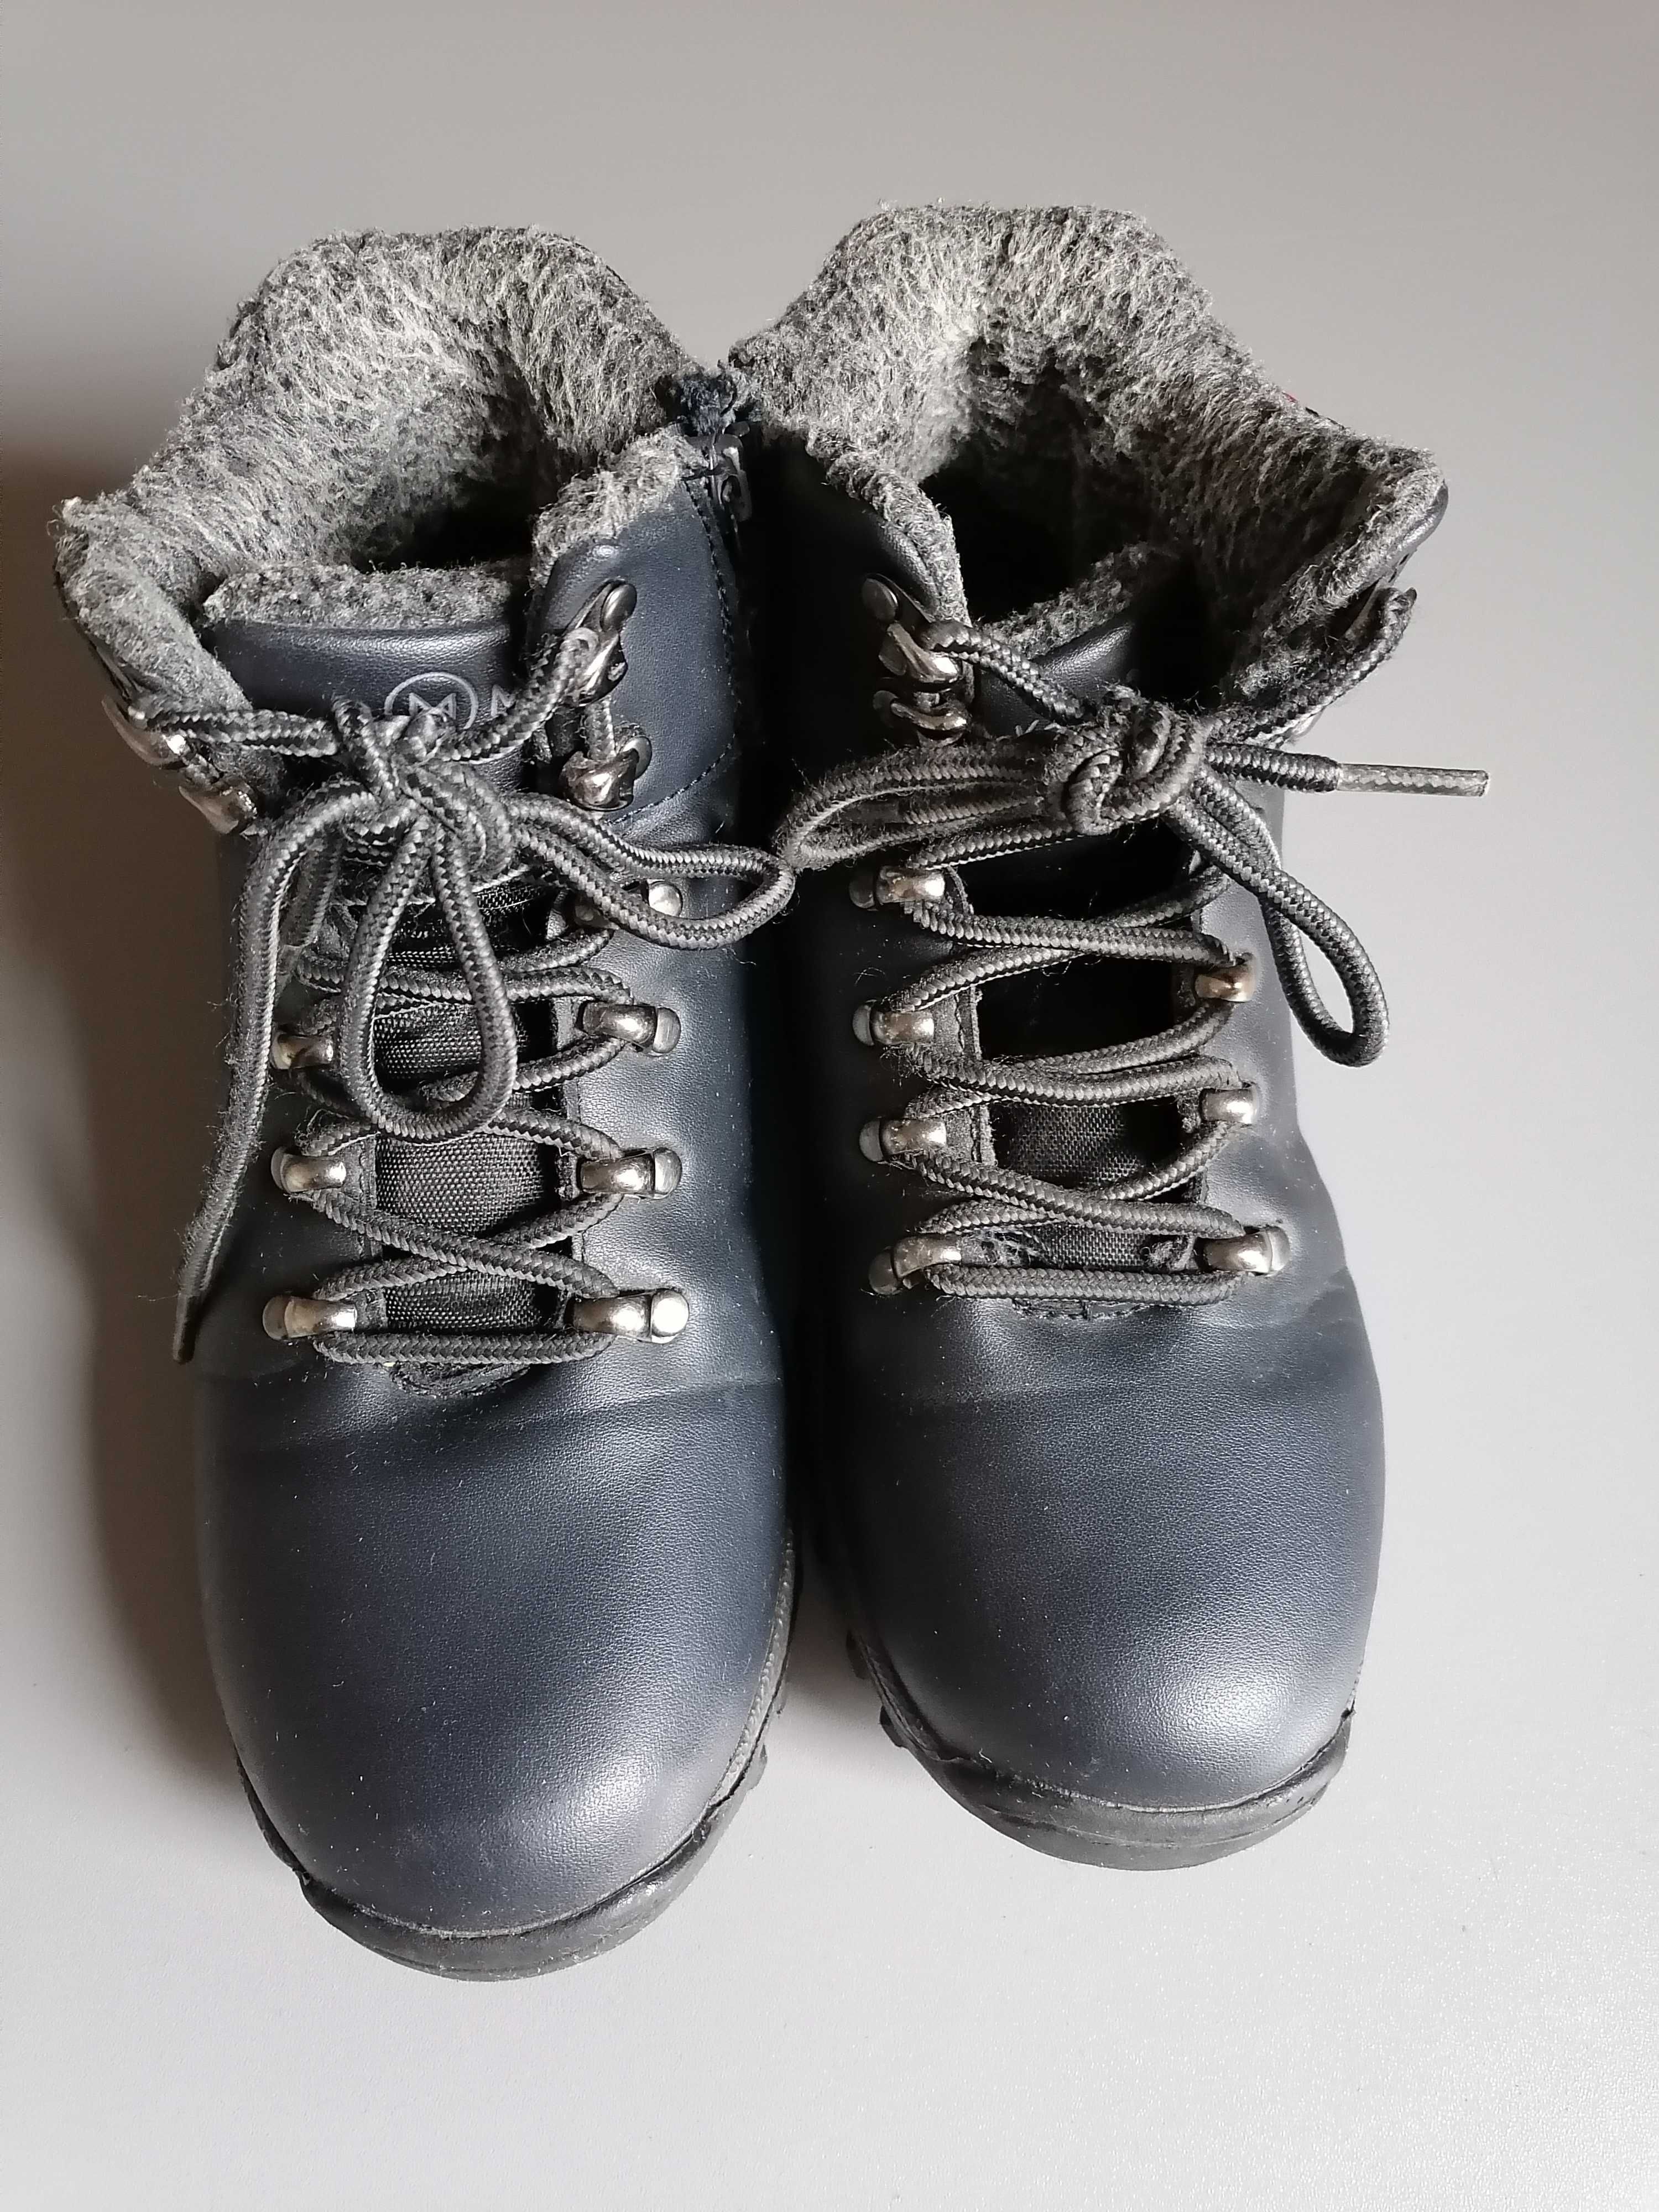 Buty zimowe McKeylor cieplutkie ,kożuszek roz.35 wkł.23 cm